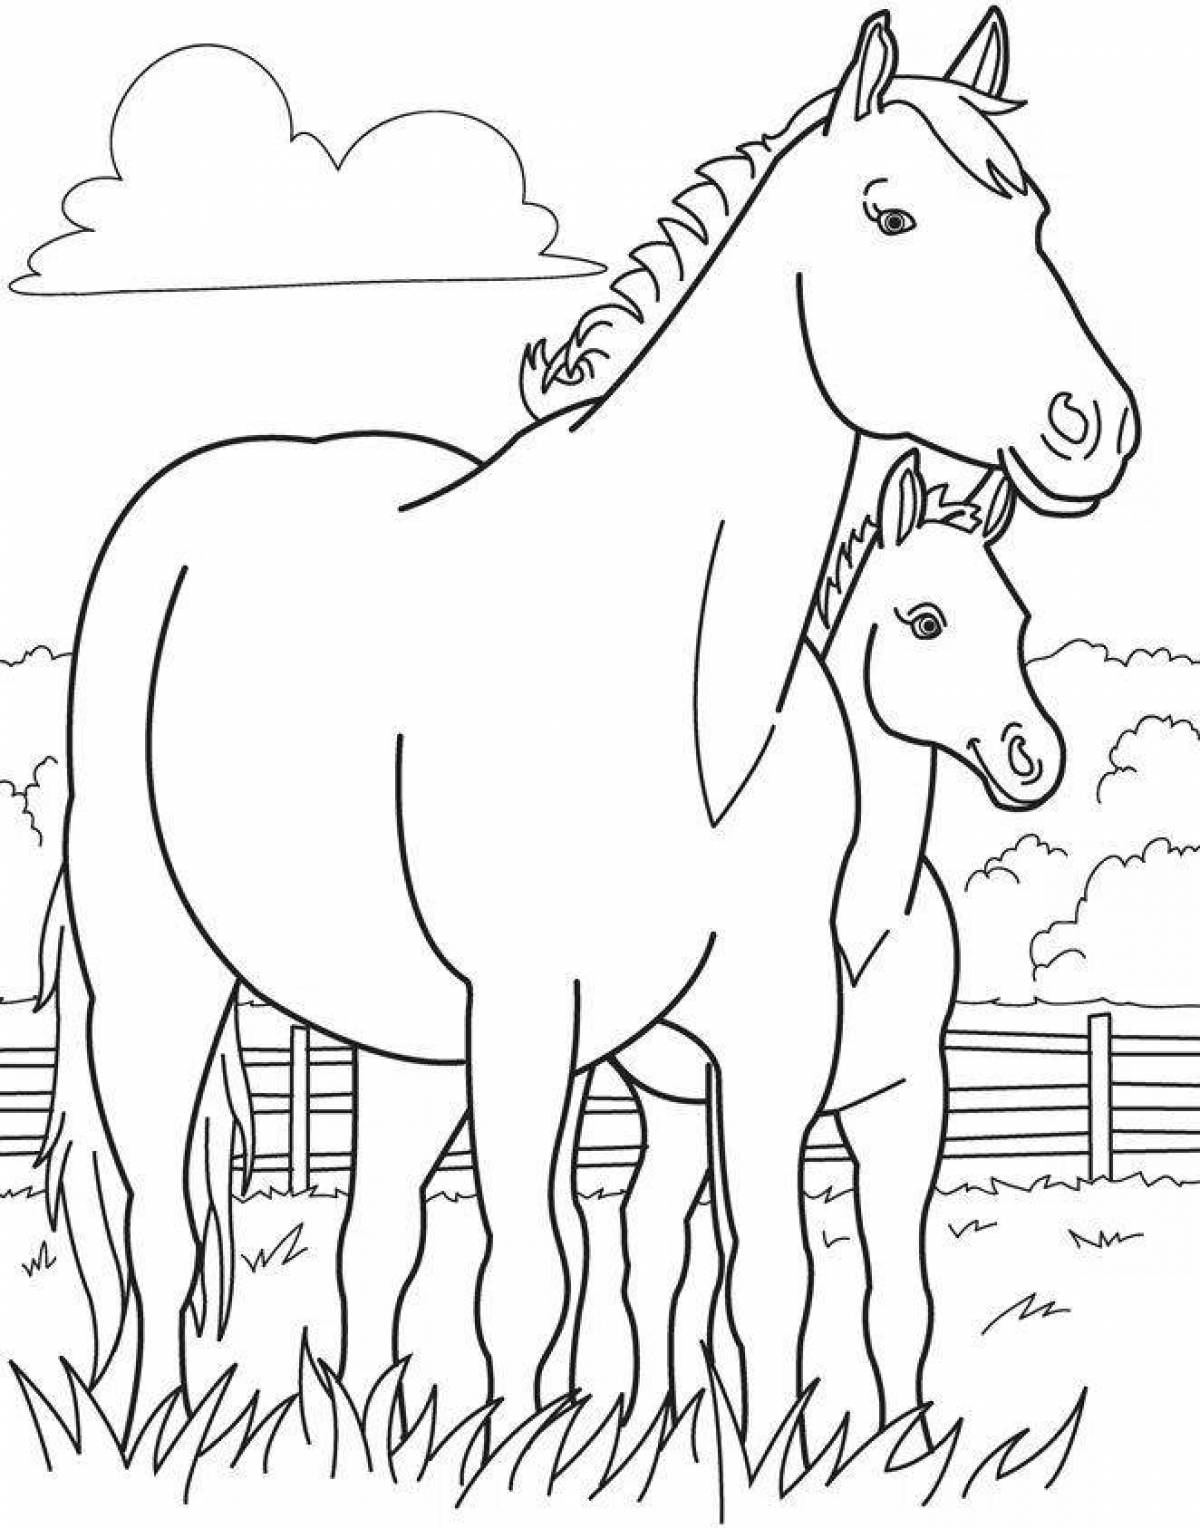 Раскрашиваем лошадку. Раскраска. Лошадка. Лошадка раскраска для детей. Лошадь раскраска для детей. Раскраска лошадь с жеребенком.